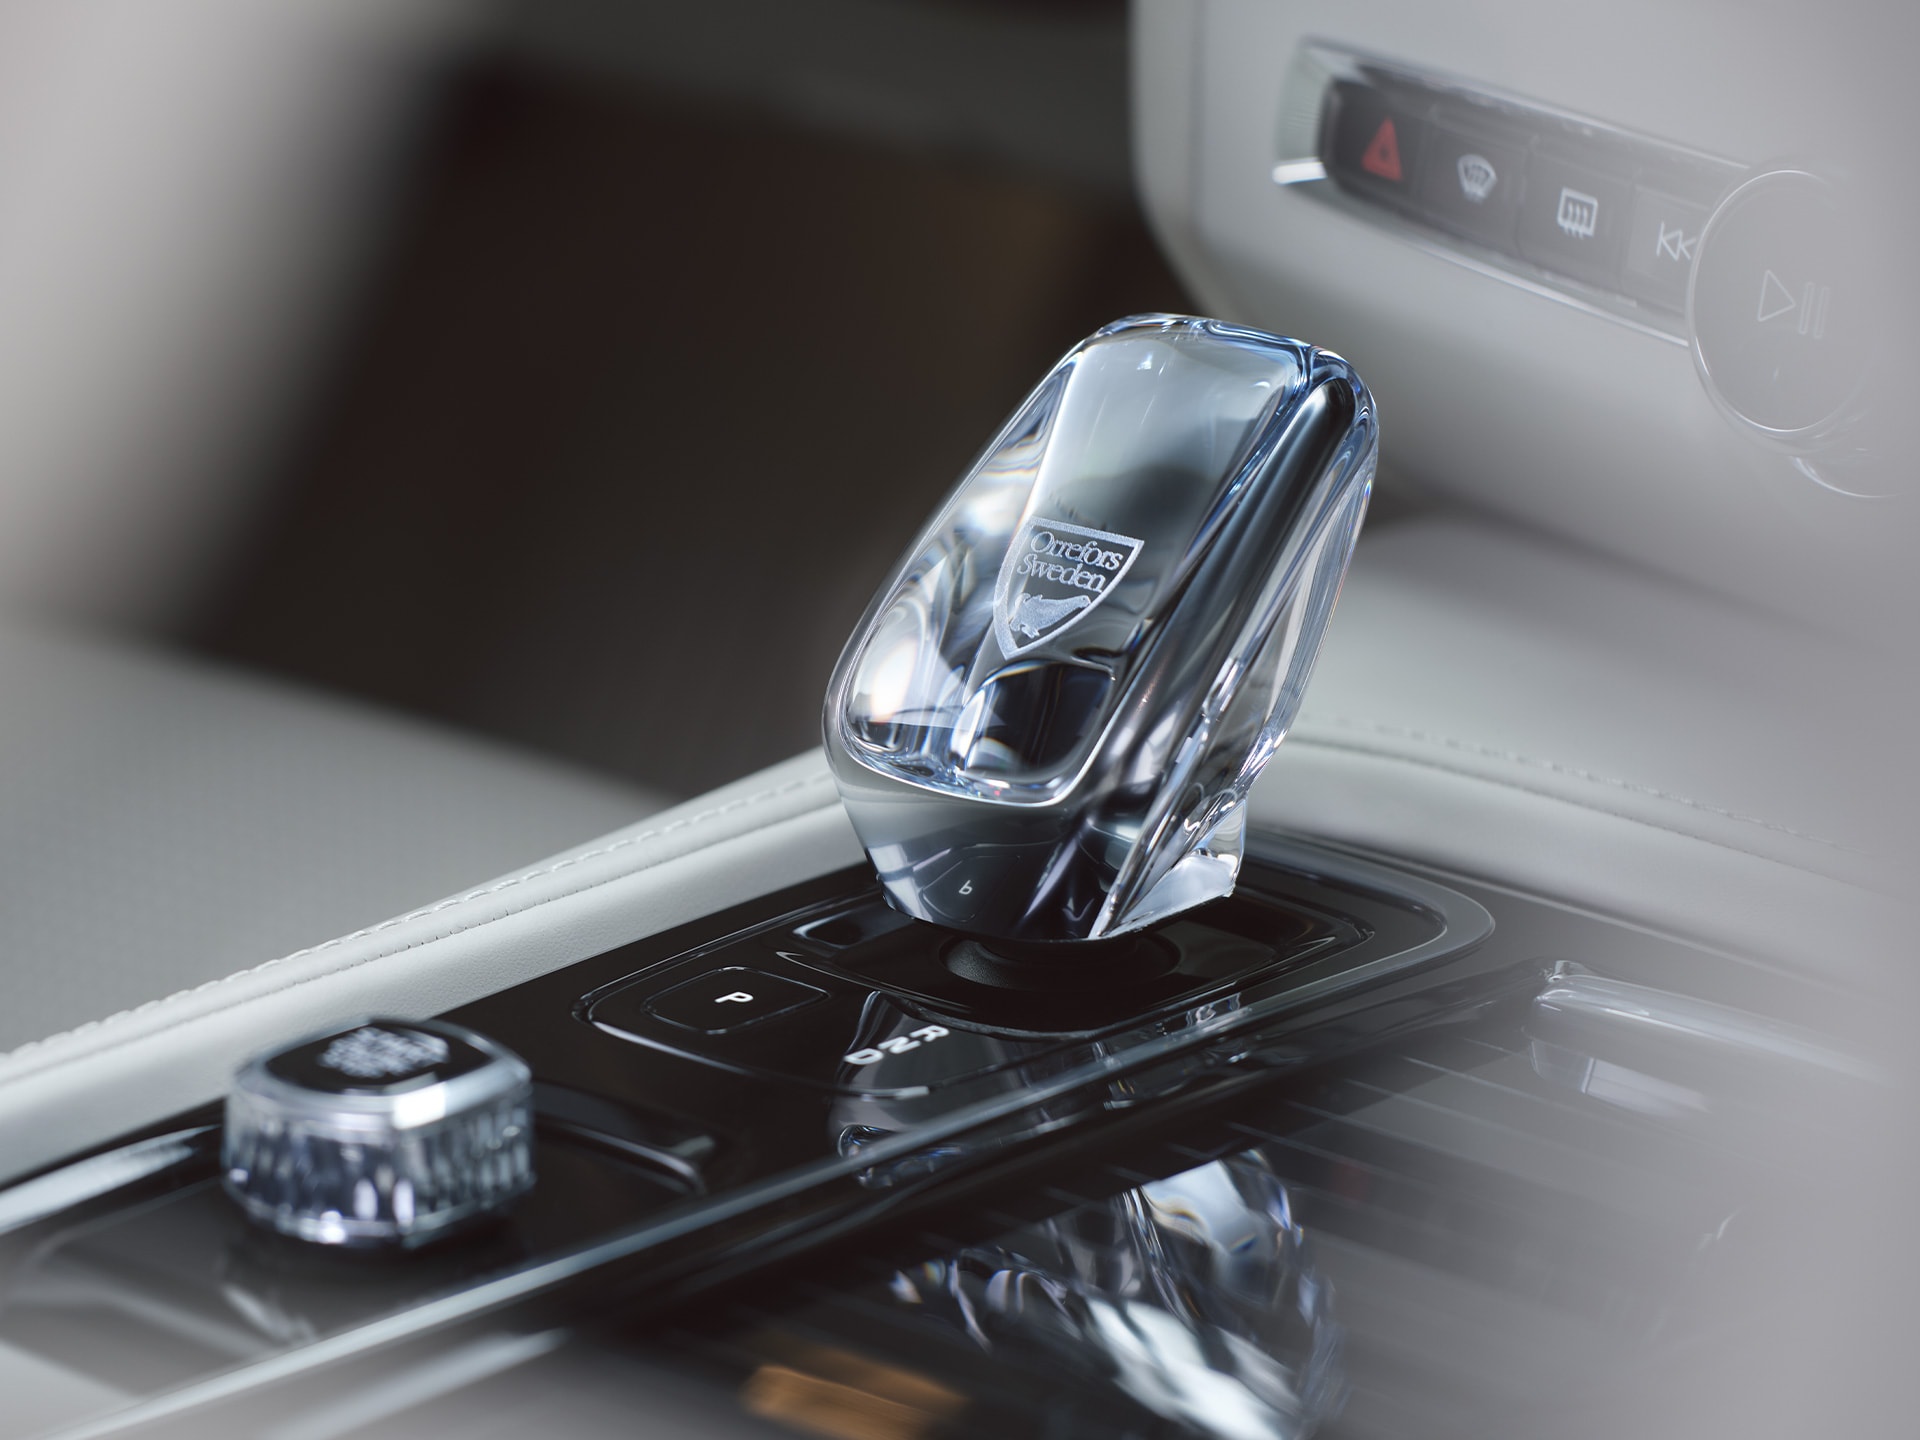 Kristalna ručica mjenjača unutar modela Volvo S90 od pravog švedskog kristala koju su izradili u kompaniji Orrefors.